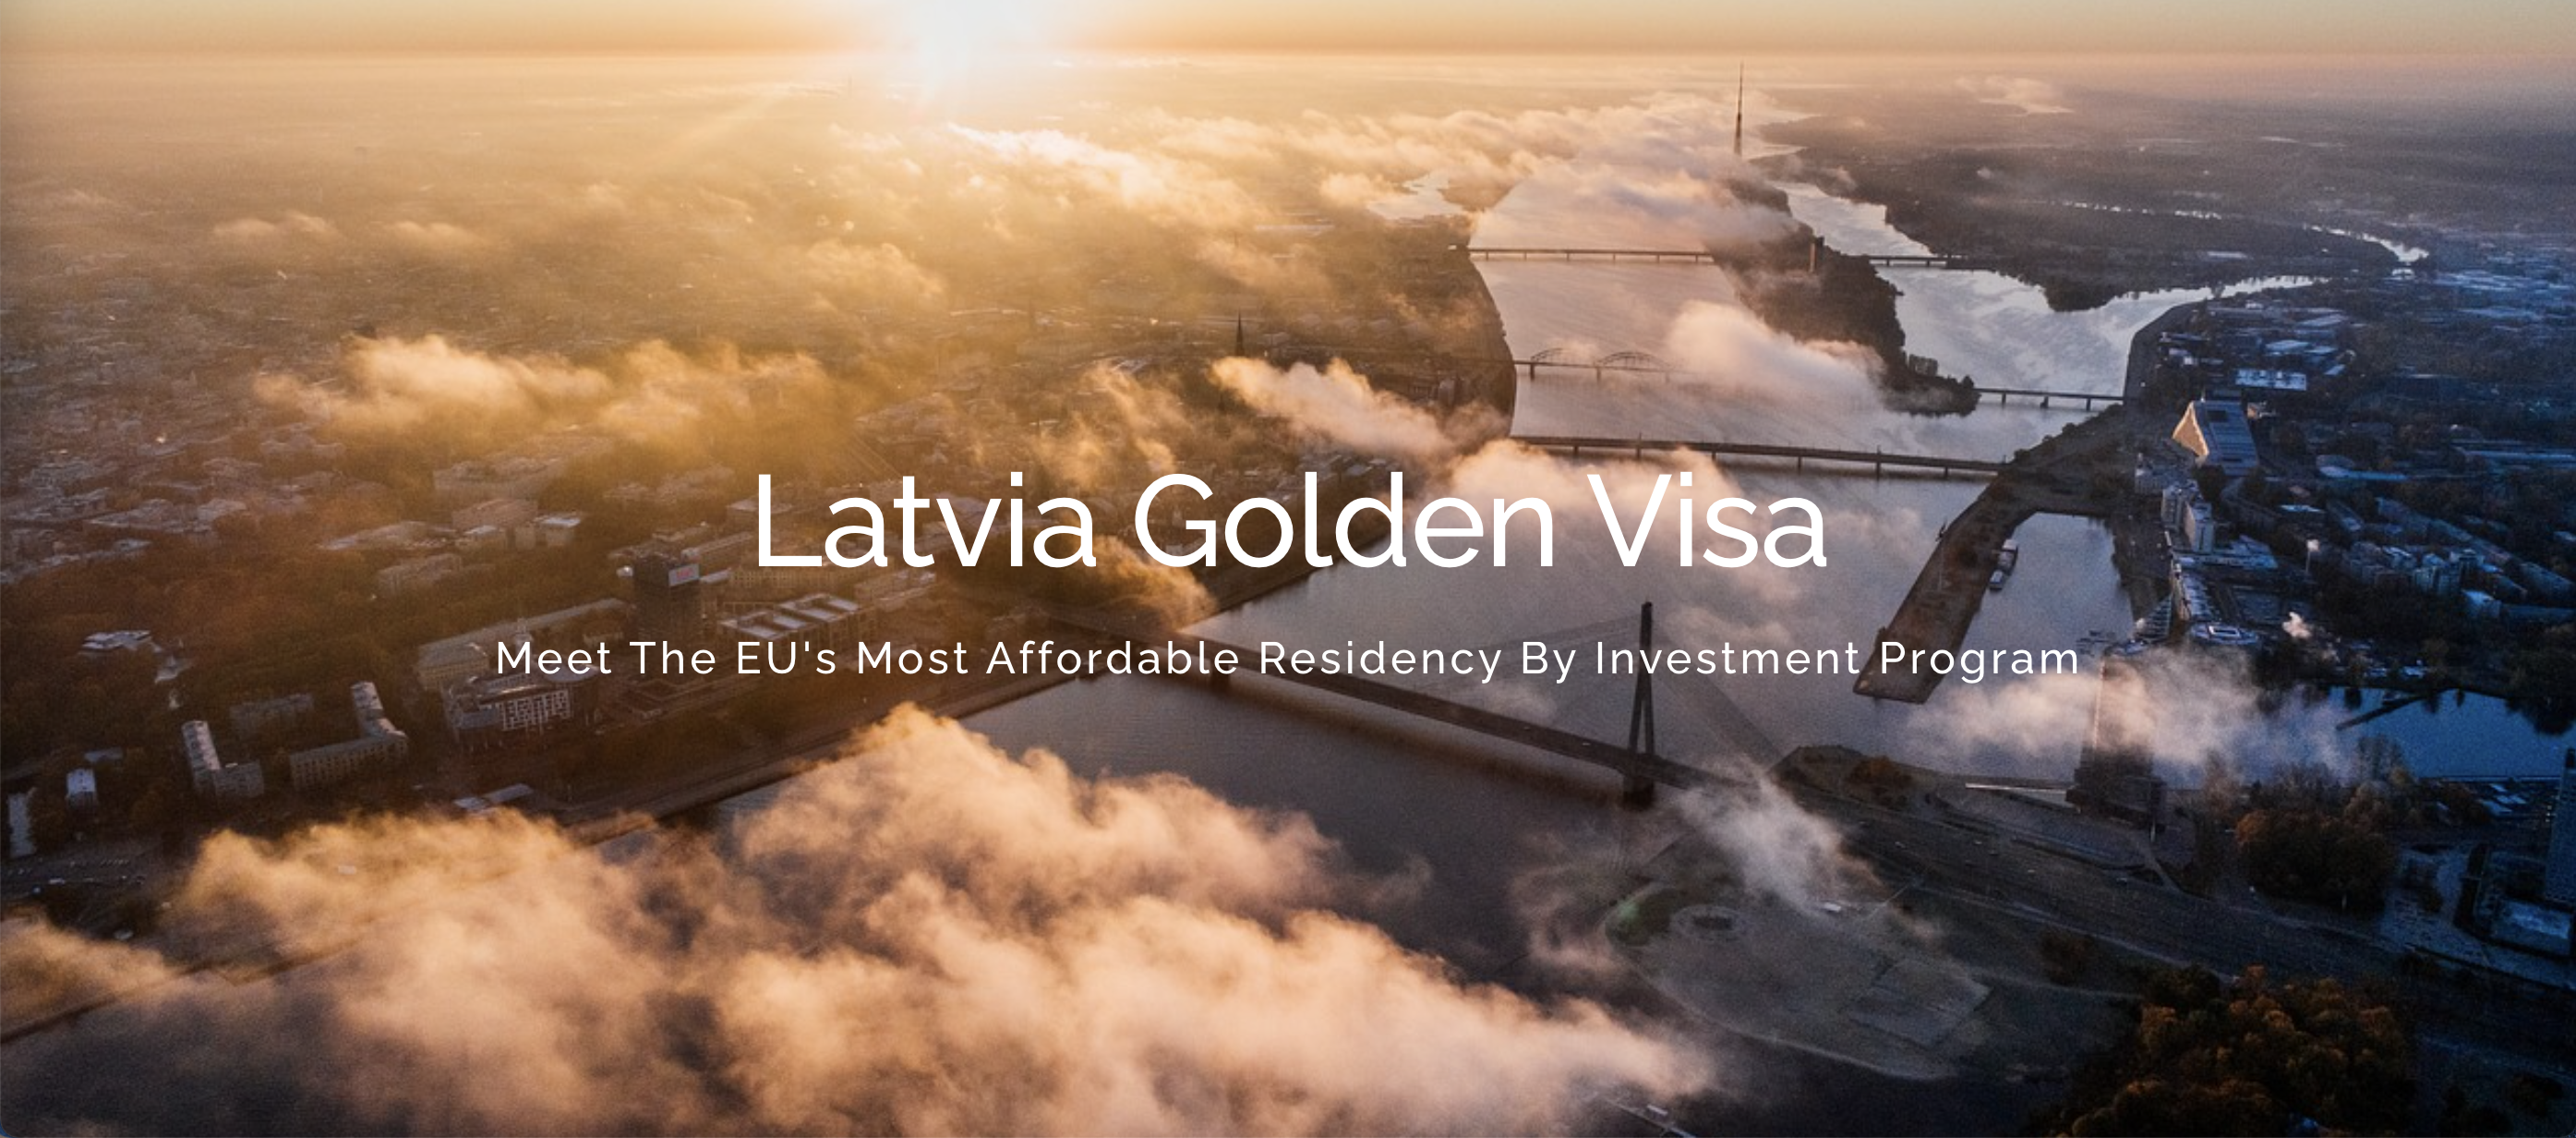 Latvia Golden Visa